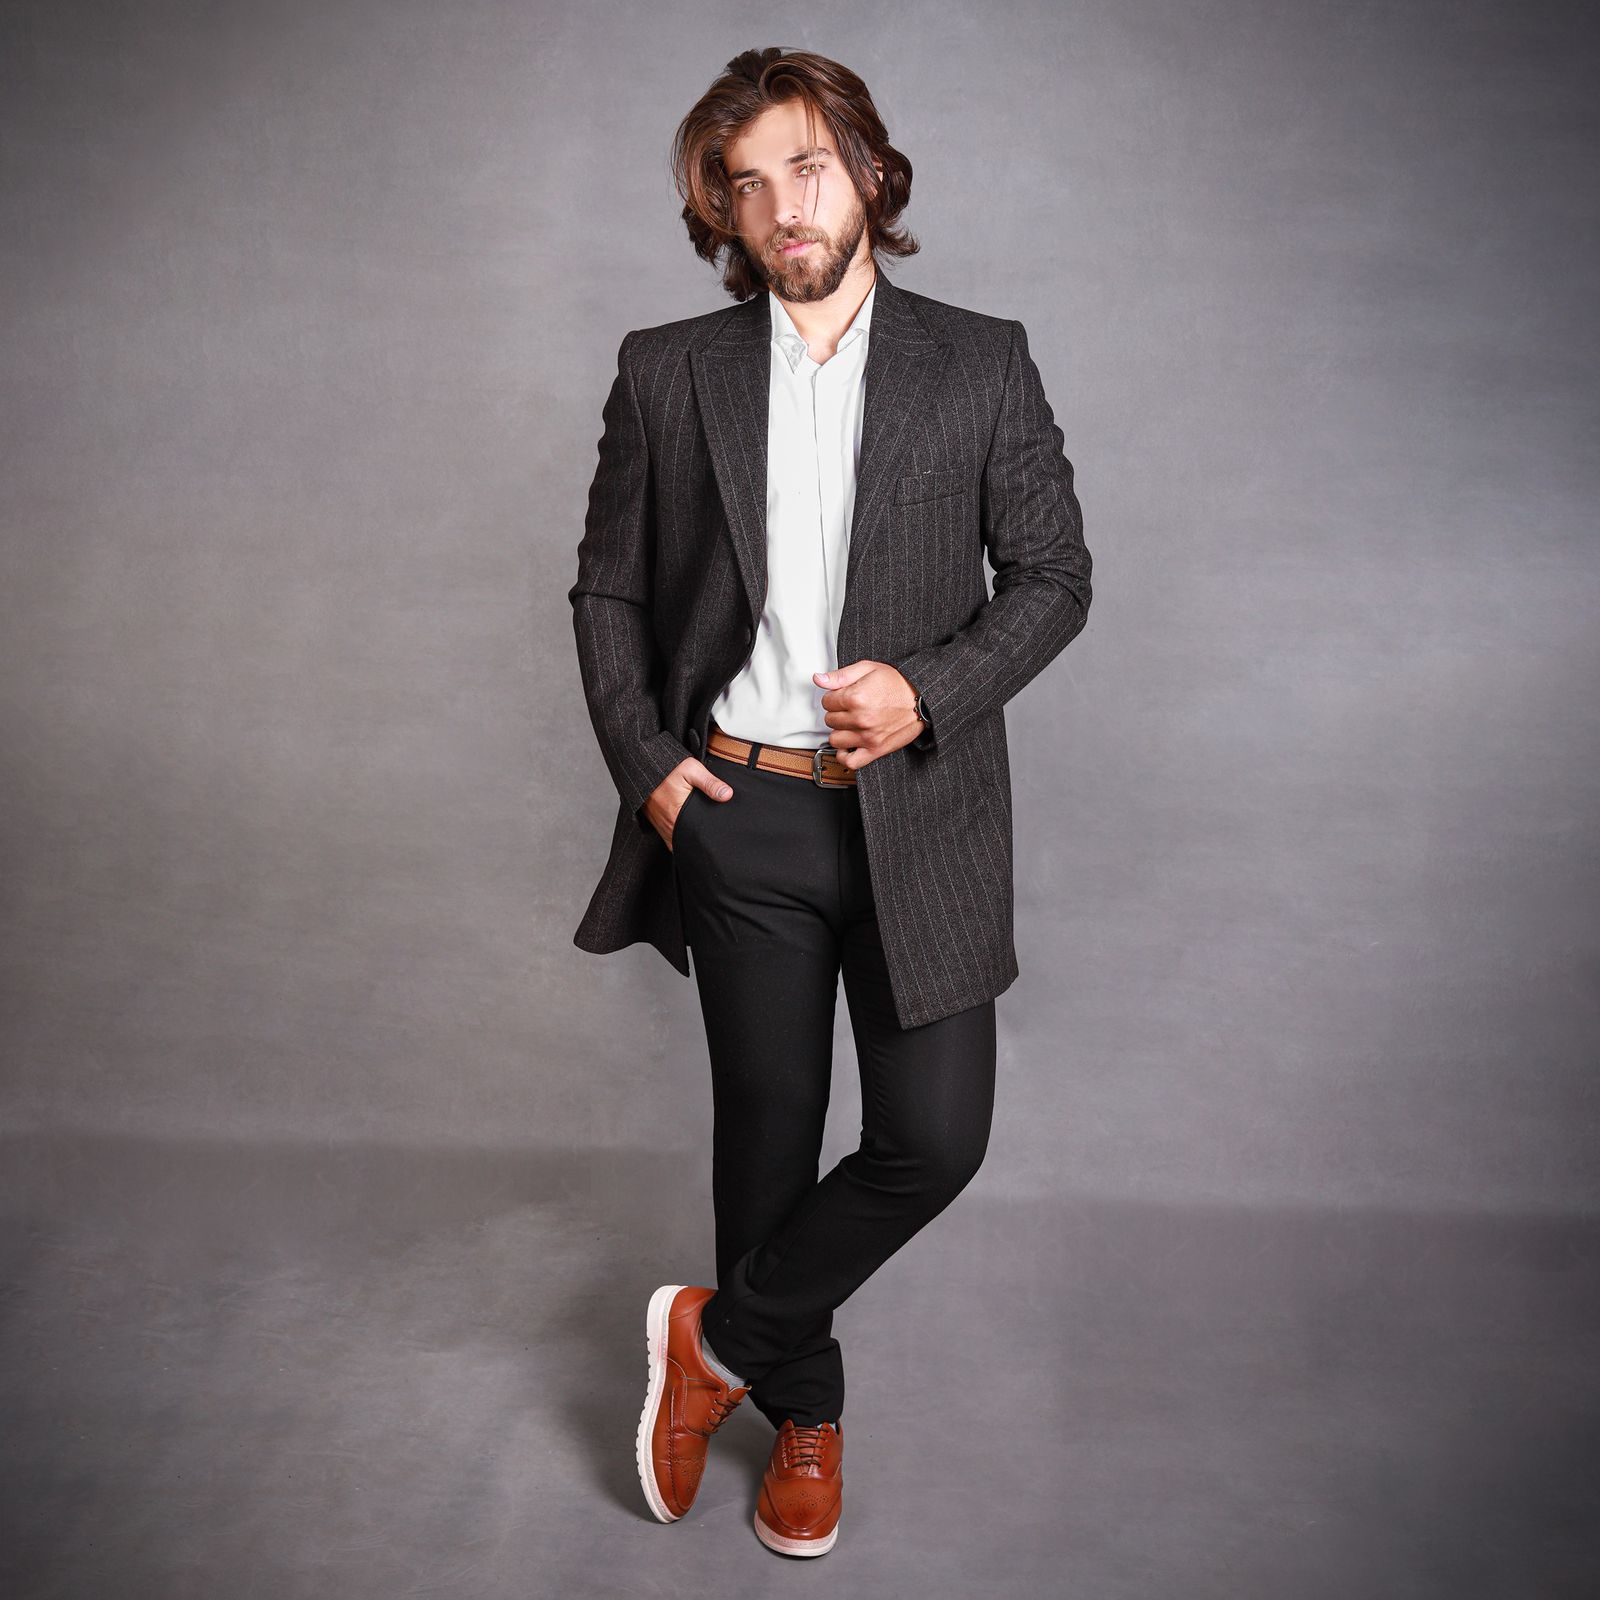 پالتو مردانه مدل راه راه بلیزر - TH رنگ قهوه ای -  - 5